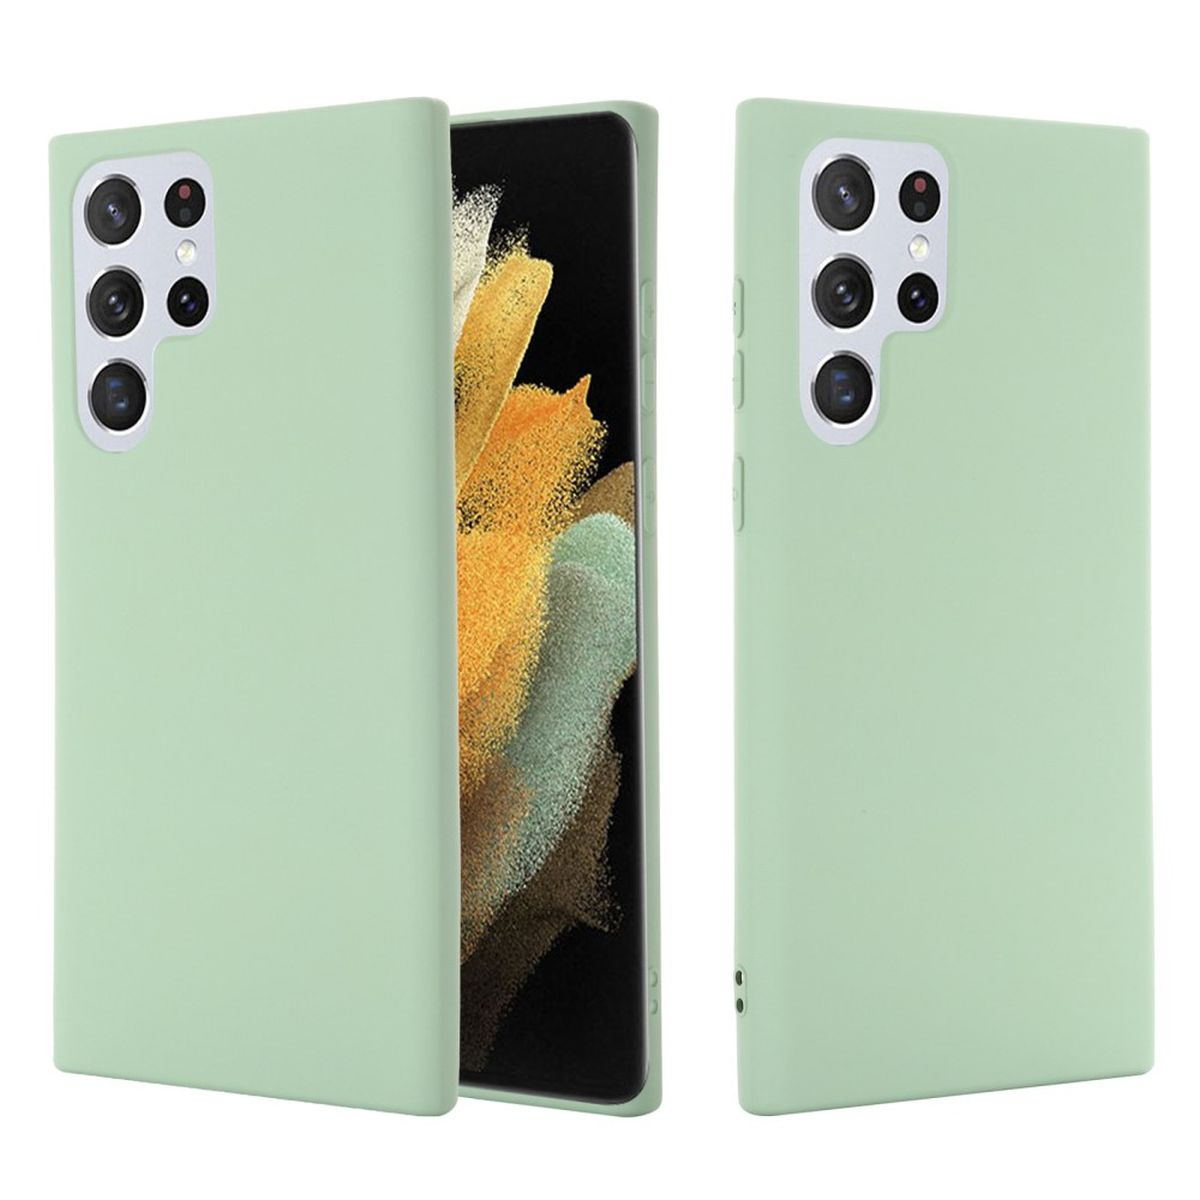 Grün aus Samsung, Backcover, COVERKINGZ Silikon, Galaxy Ultra, S22 Handycase